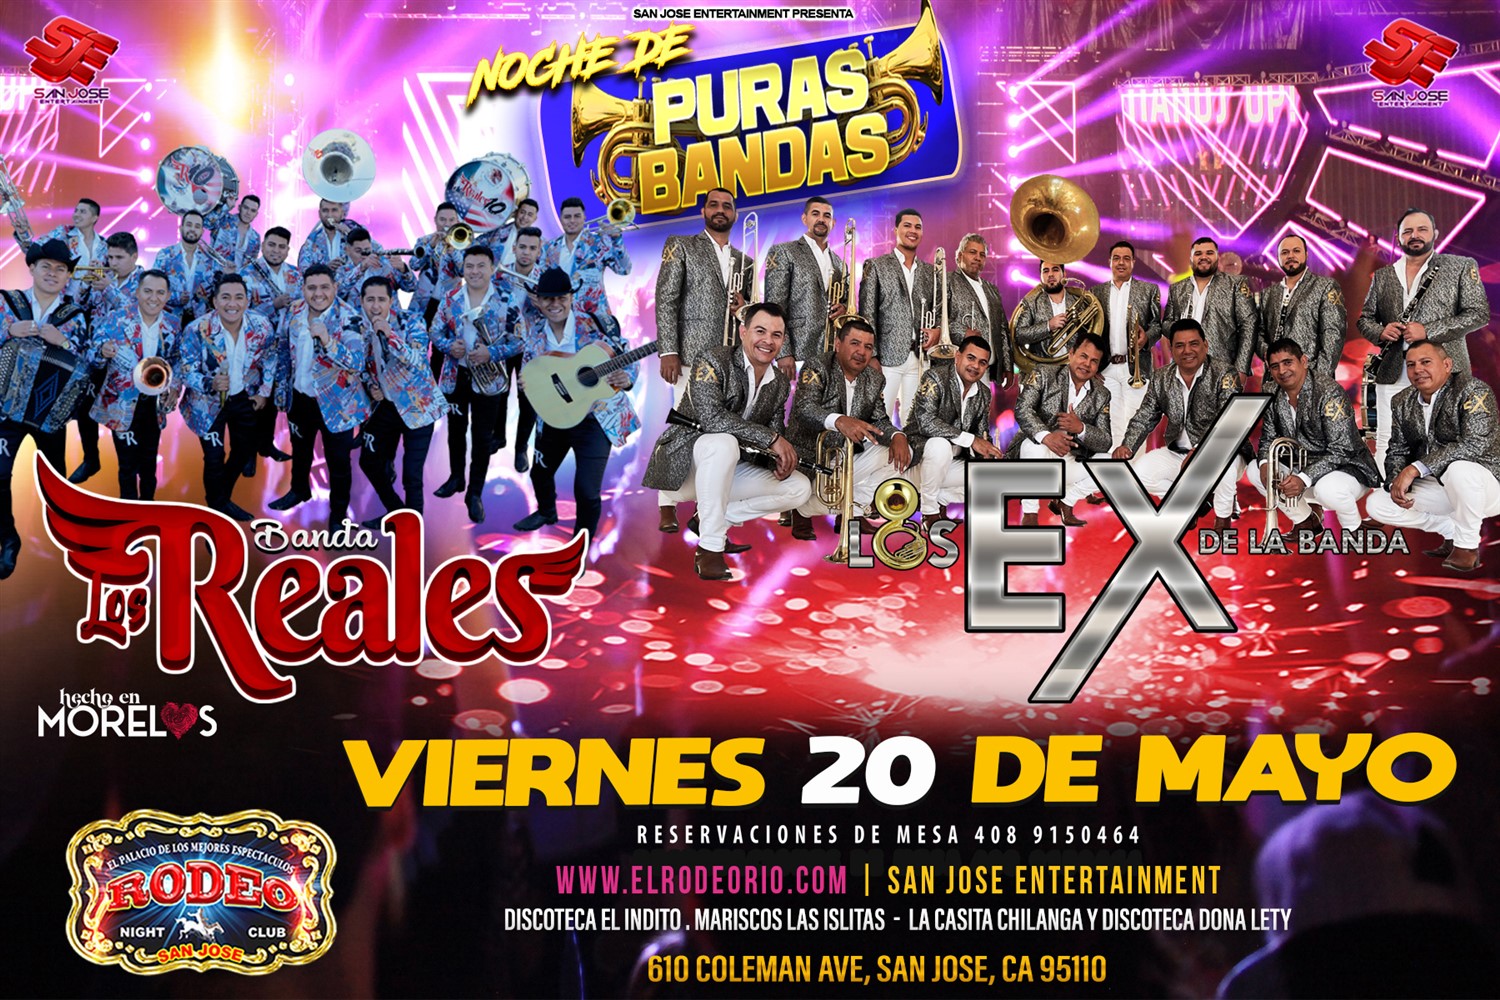 Los Ex de La Banda y Banda Los Reales  on May 20, 21:00@Club Rodeo - Buy tickets and Get information on elrodeorio.com sanjoseentertainment